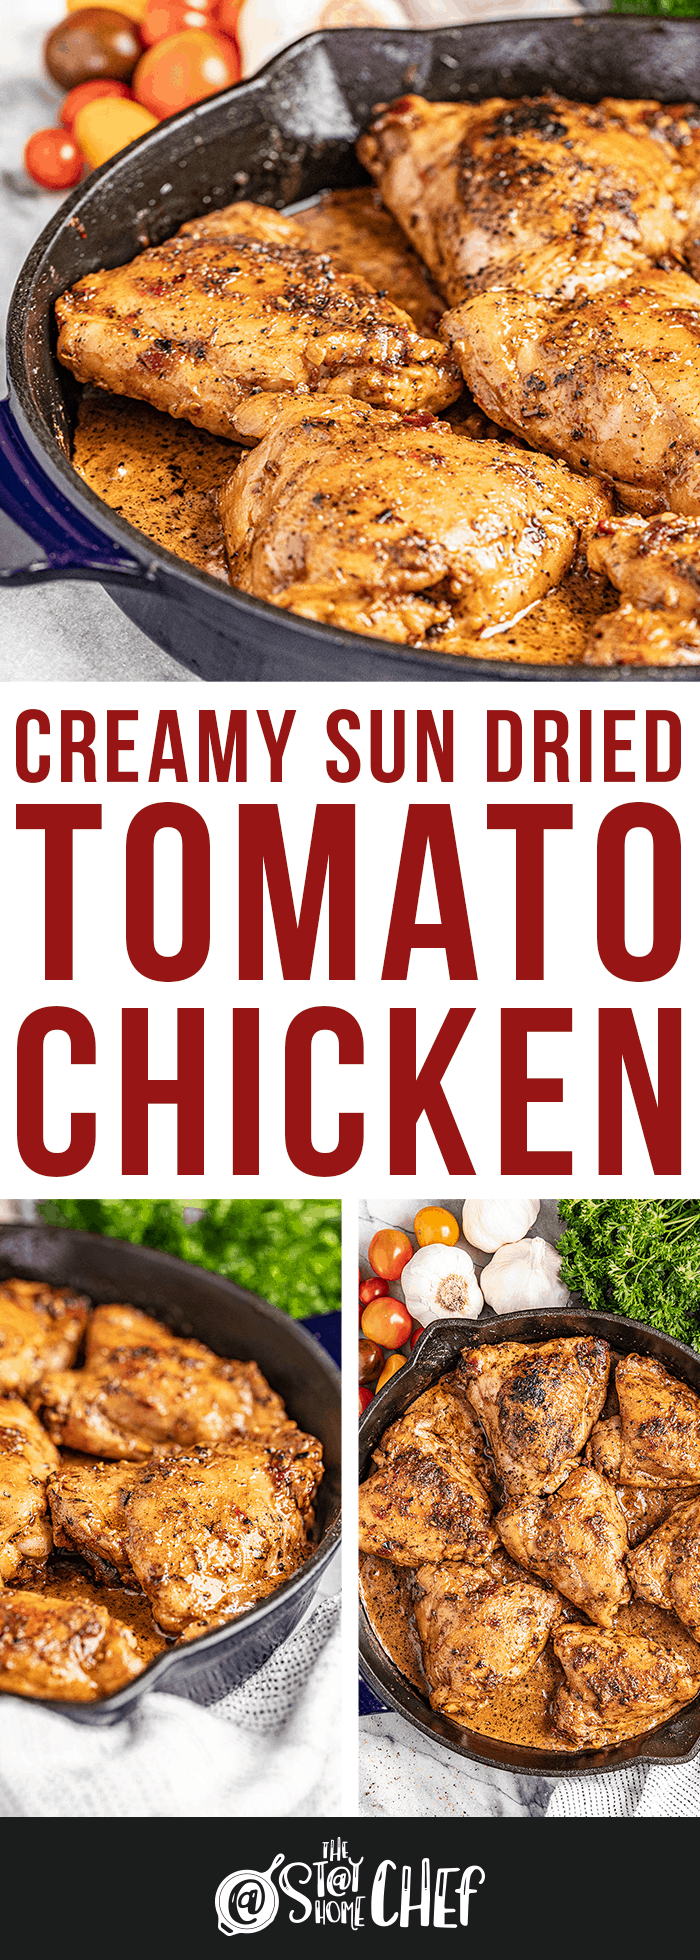 Creamy Sun-dried Tomato Chicken